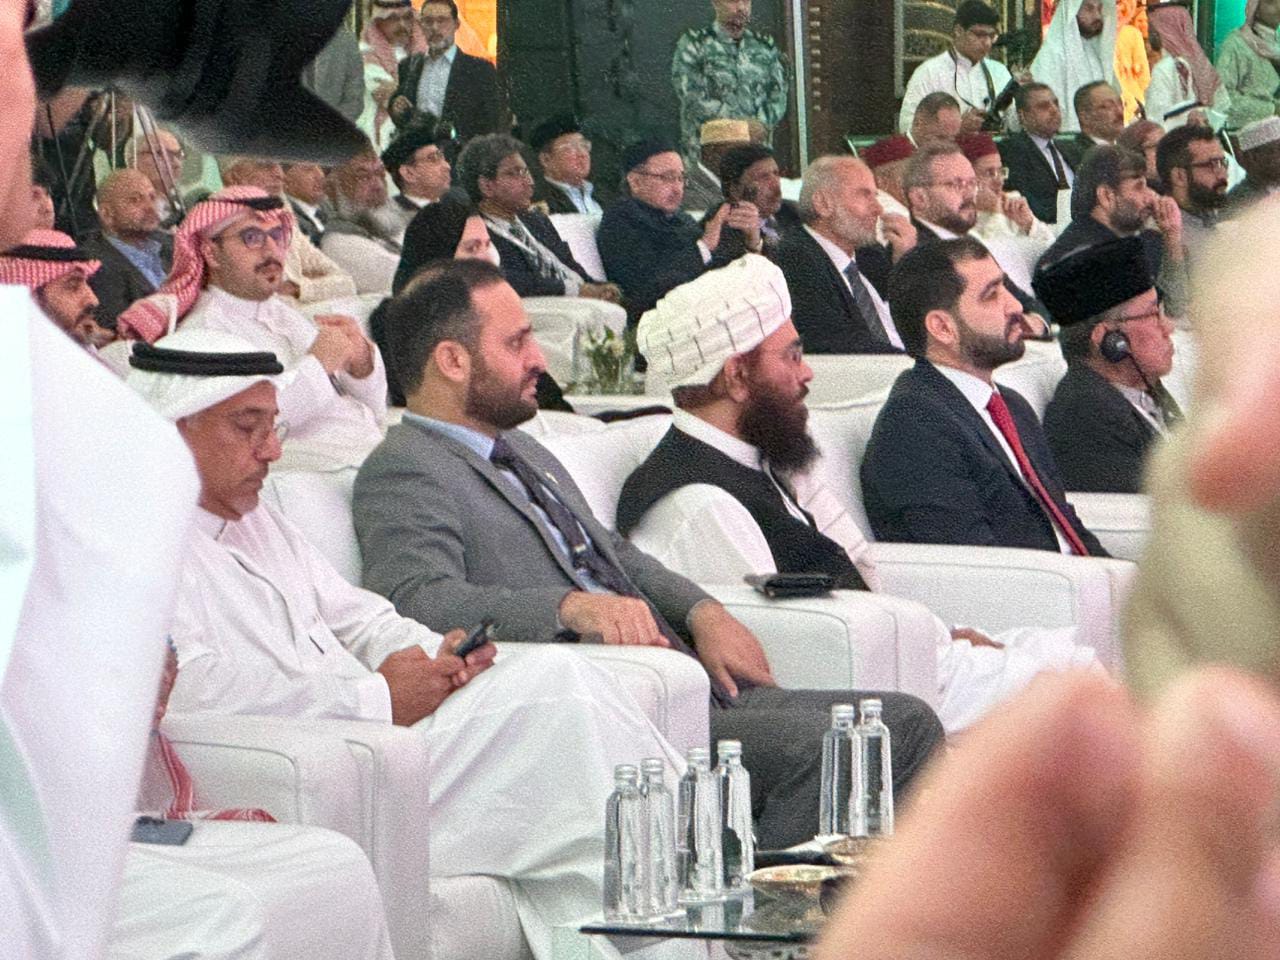 اشتراک وزیر ارشاد، حج و اوقاف در کنفراس بزرگ حج که در شهر جده عربستان سعودی دایر گردیده بود